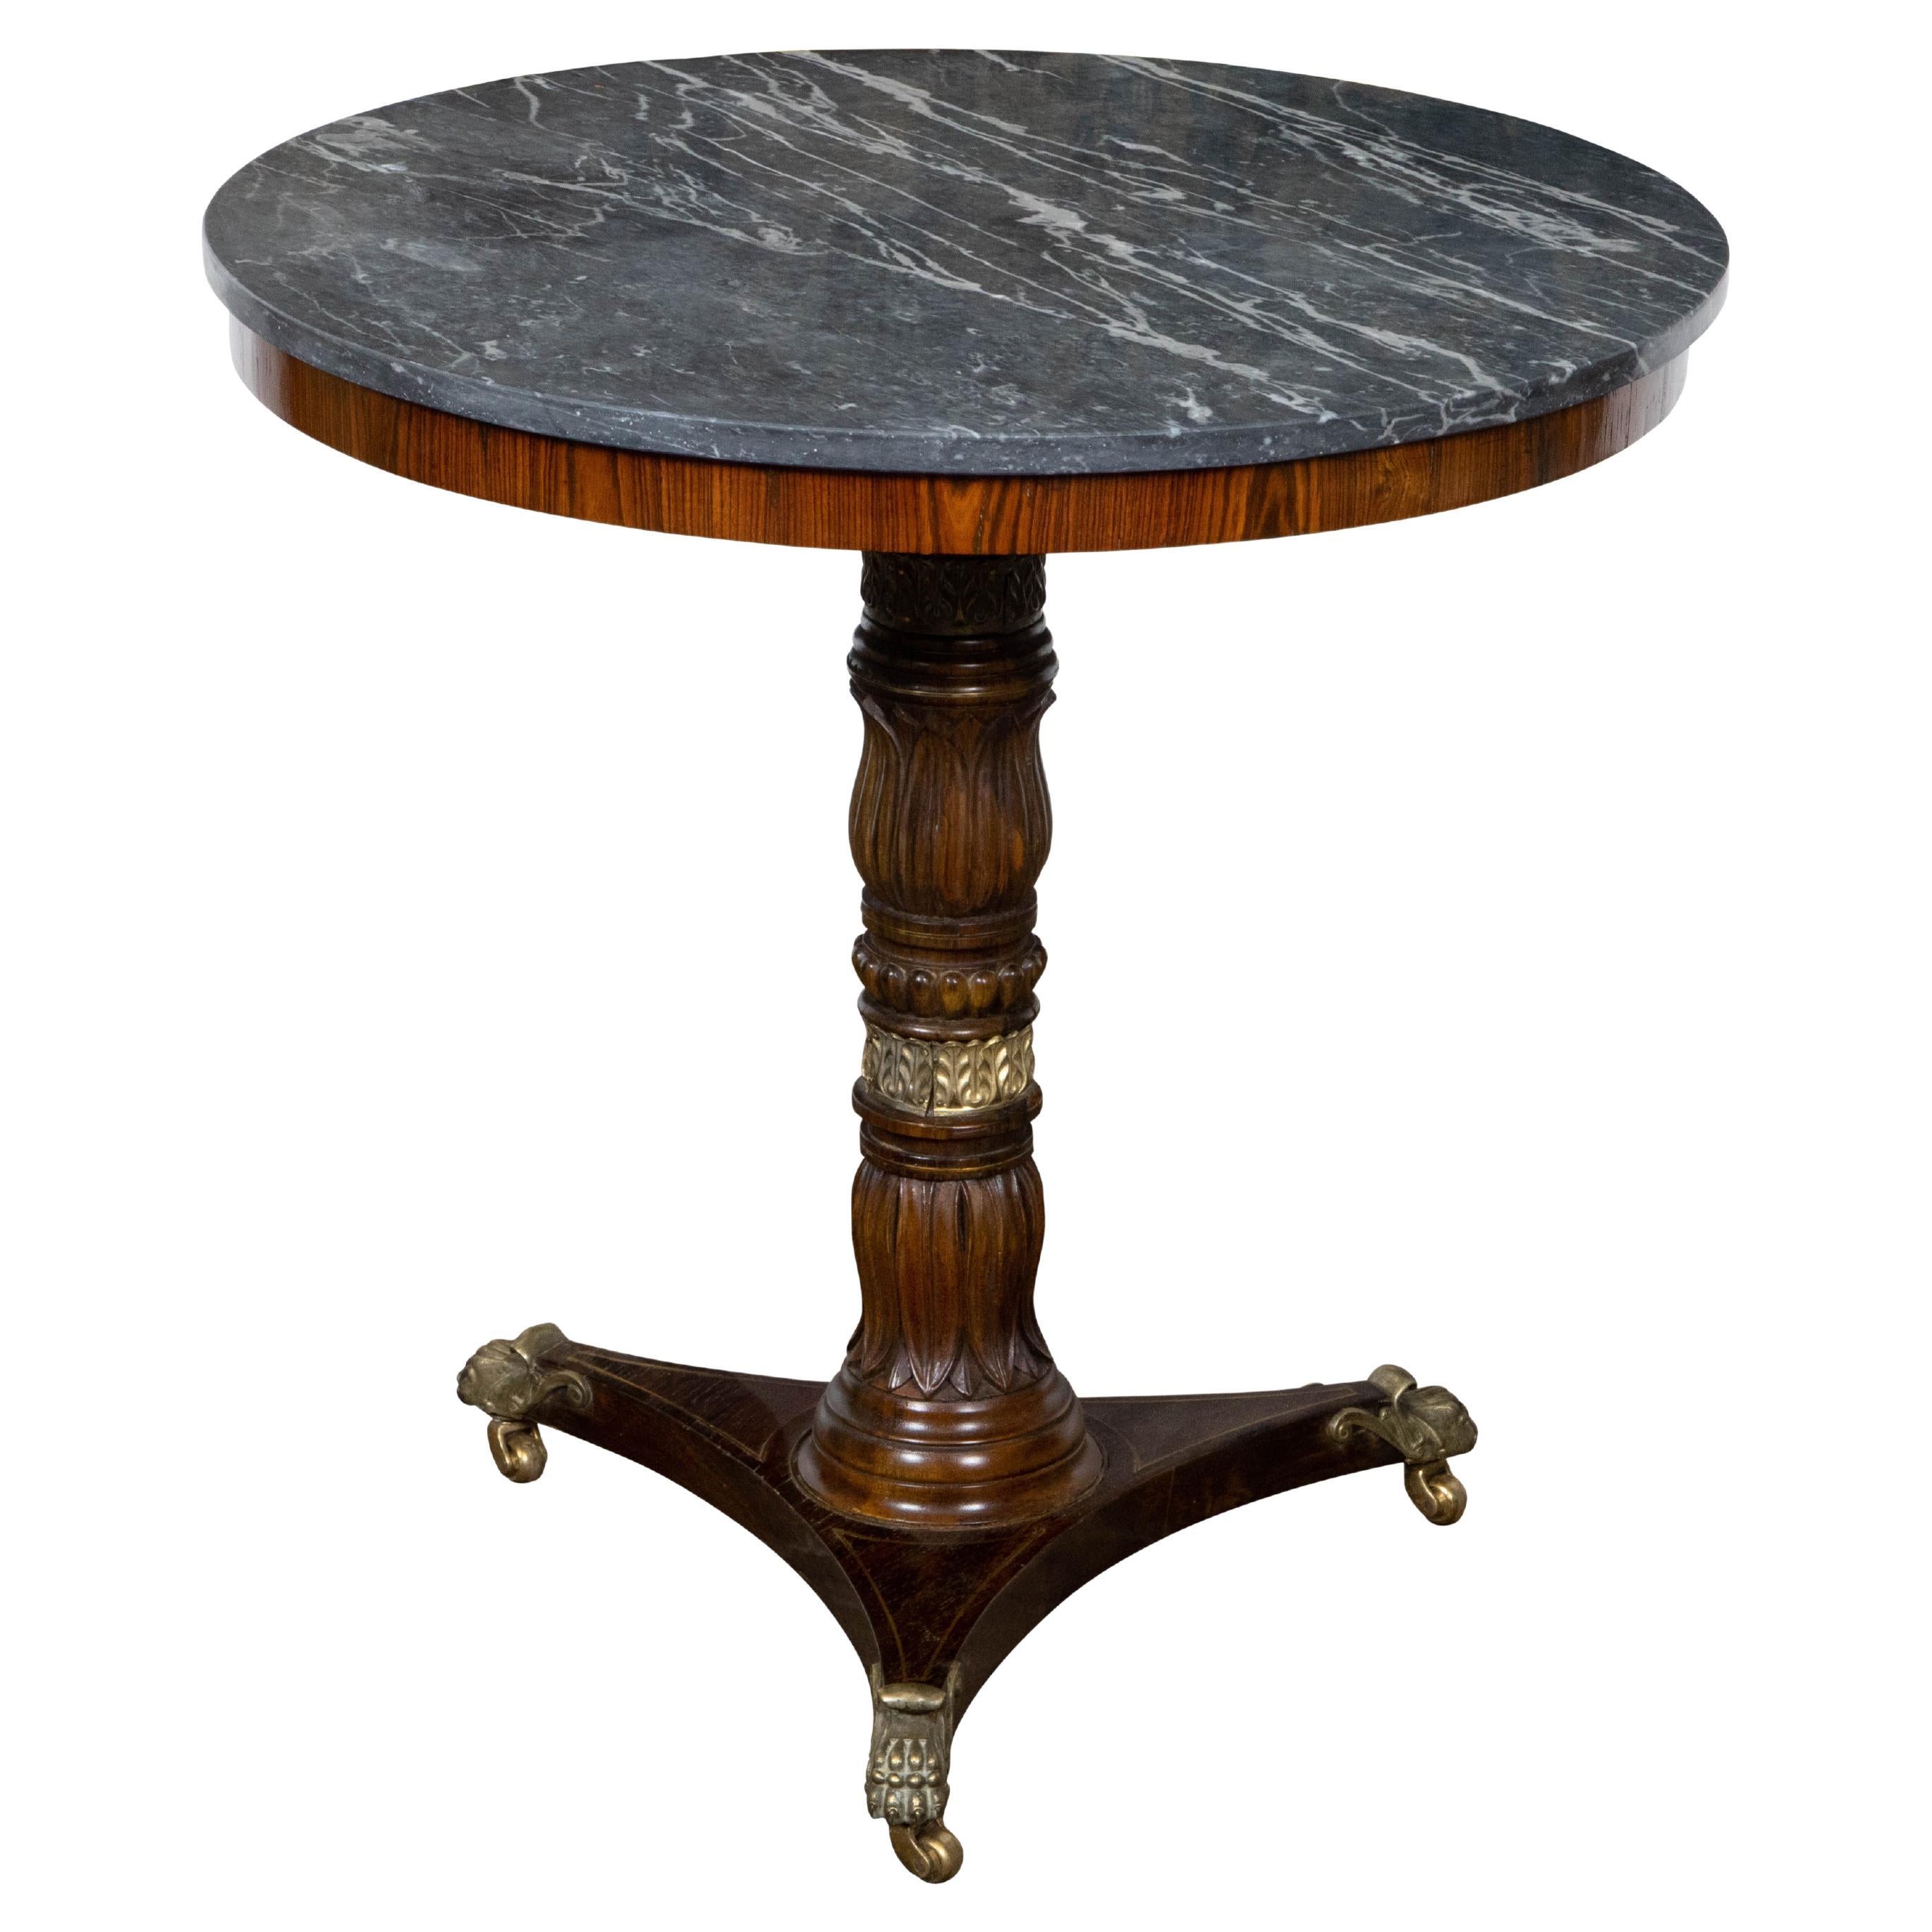 Table d'appoint en acajou de la période Régence anglaise du 19e siècle avec plateau en marbre gris